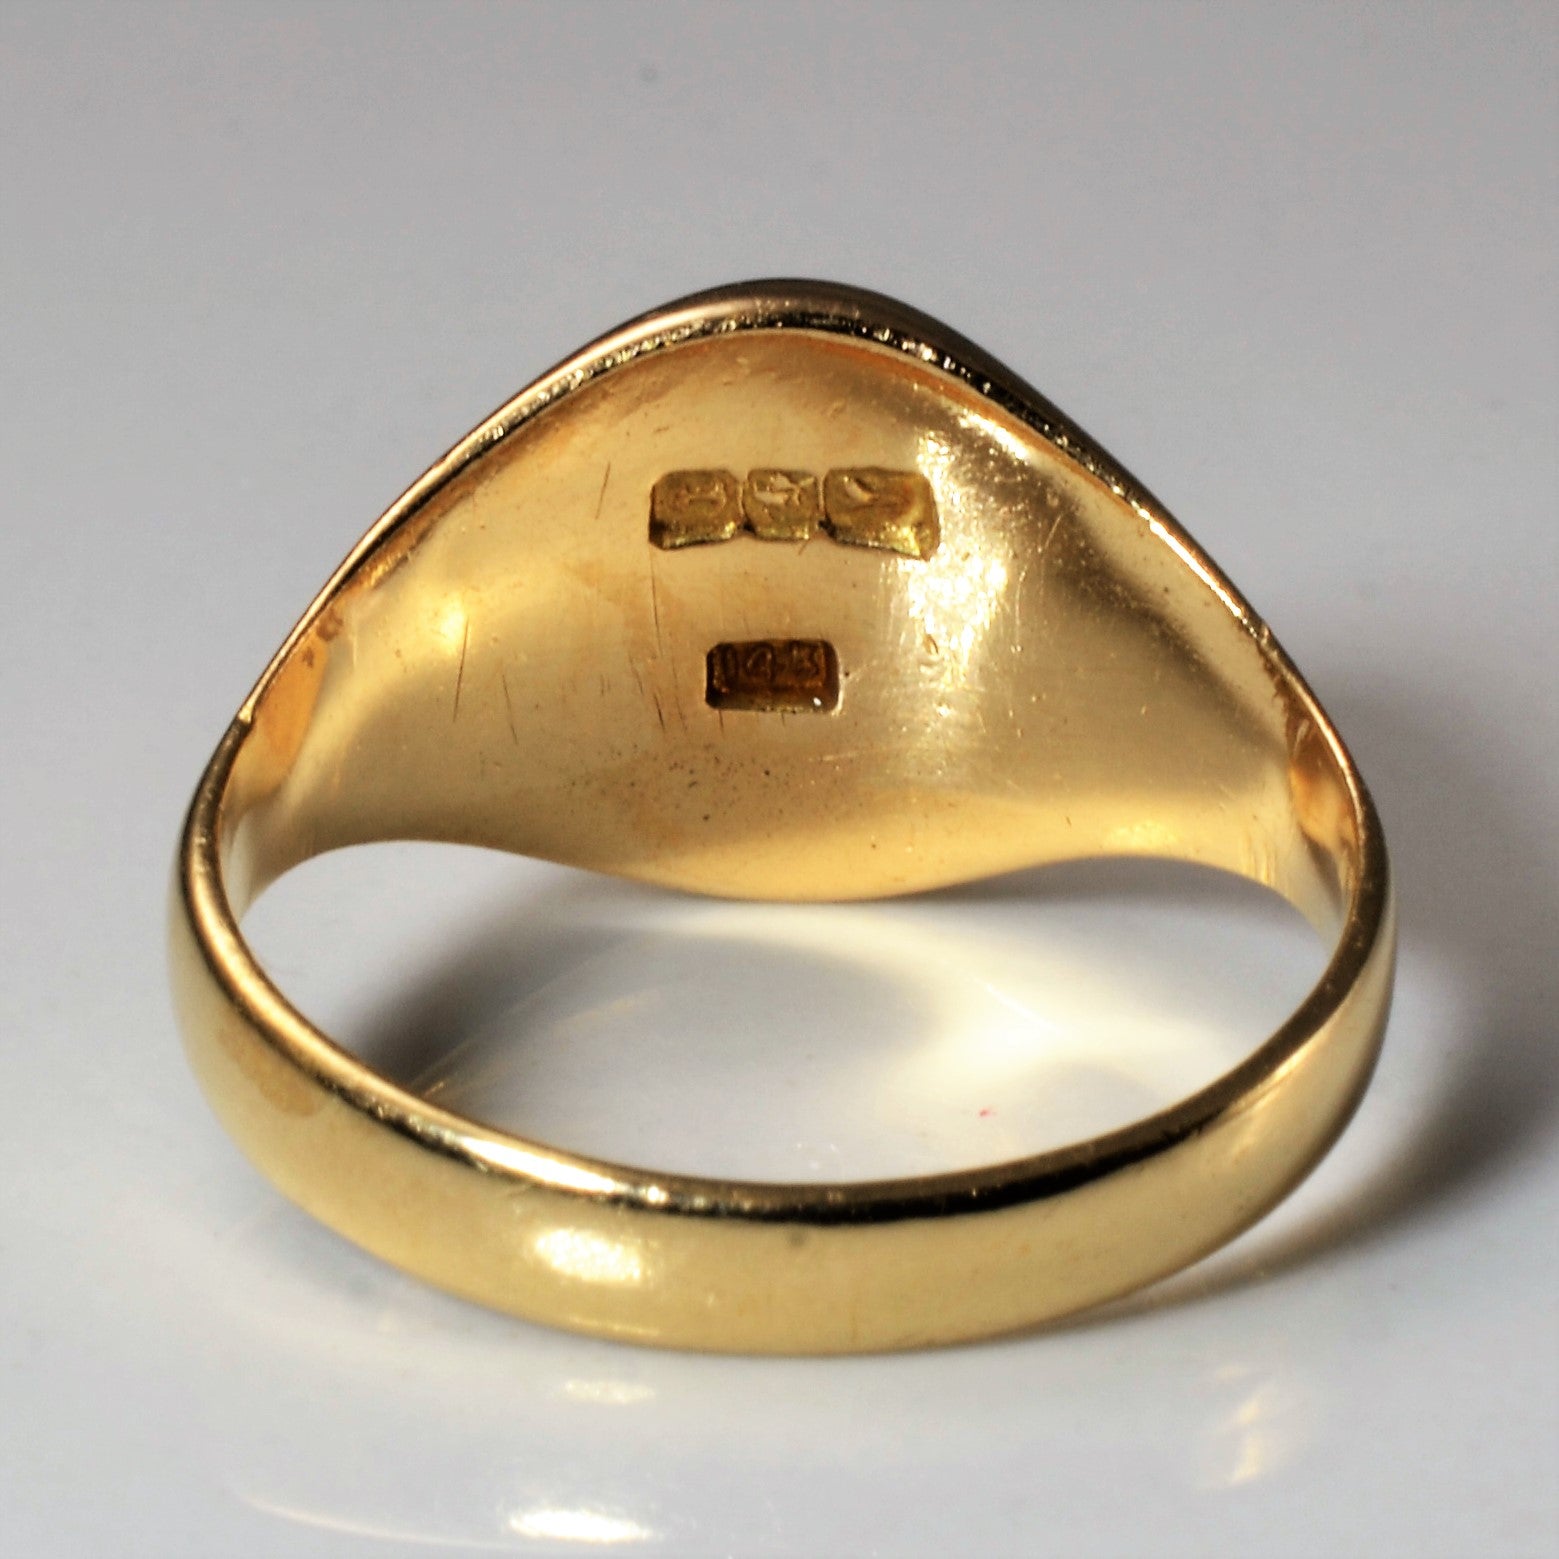 Edwardian Era Engraved 'S' Oval Signet Ring | SZ 6.5 |